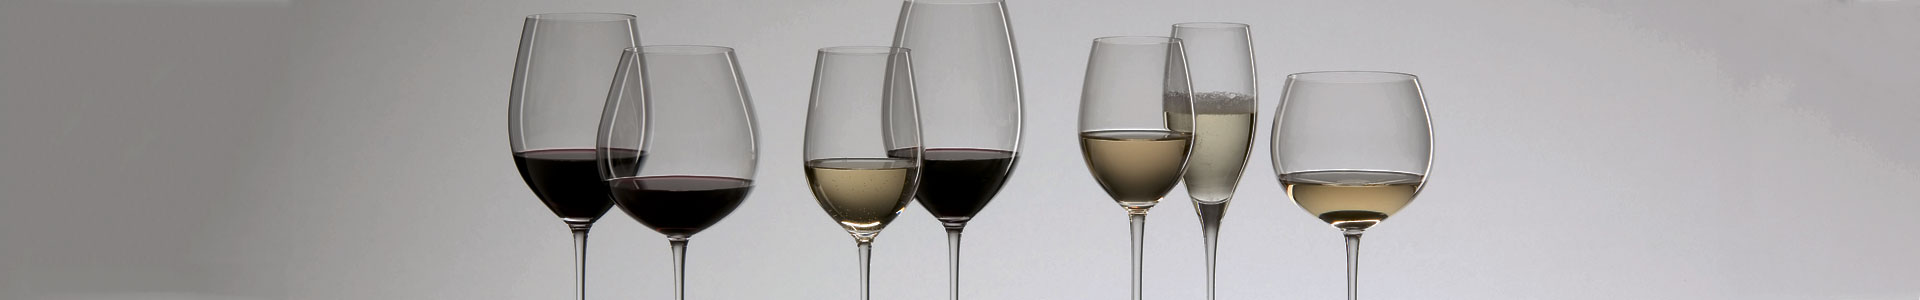 Weingläser von Riedel Glas in verschiedenen Größen für Weißweine und Rotweine.